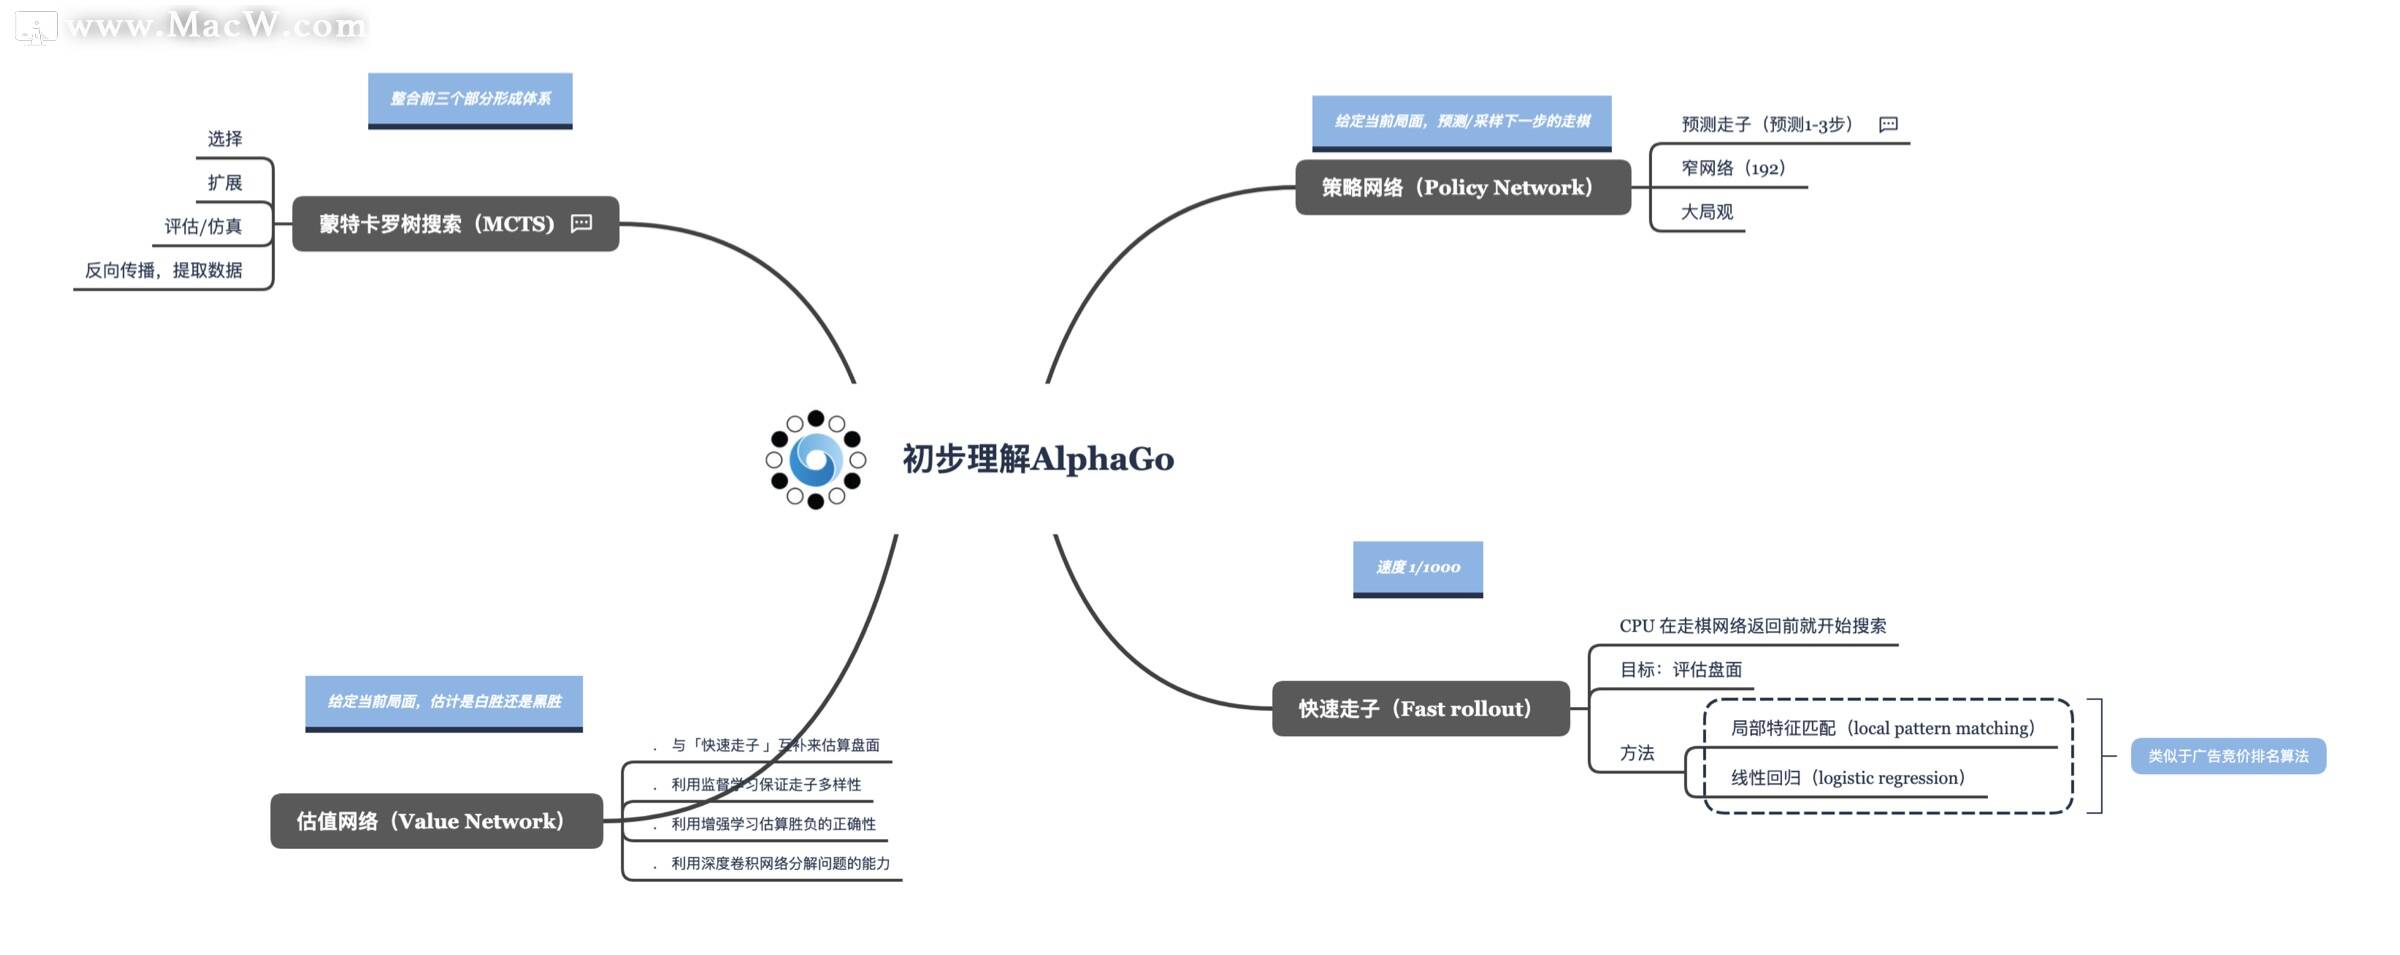 初步理解AlphaGo xmind模板